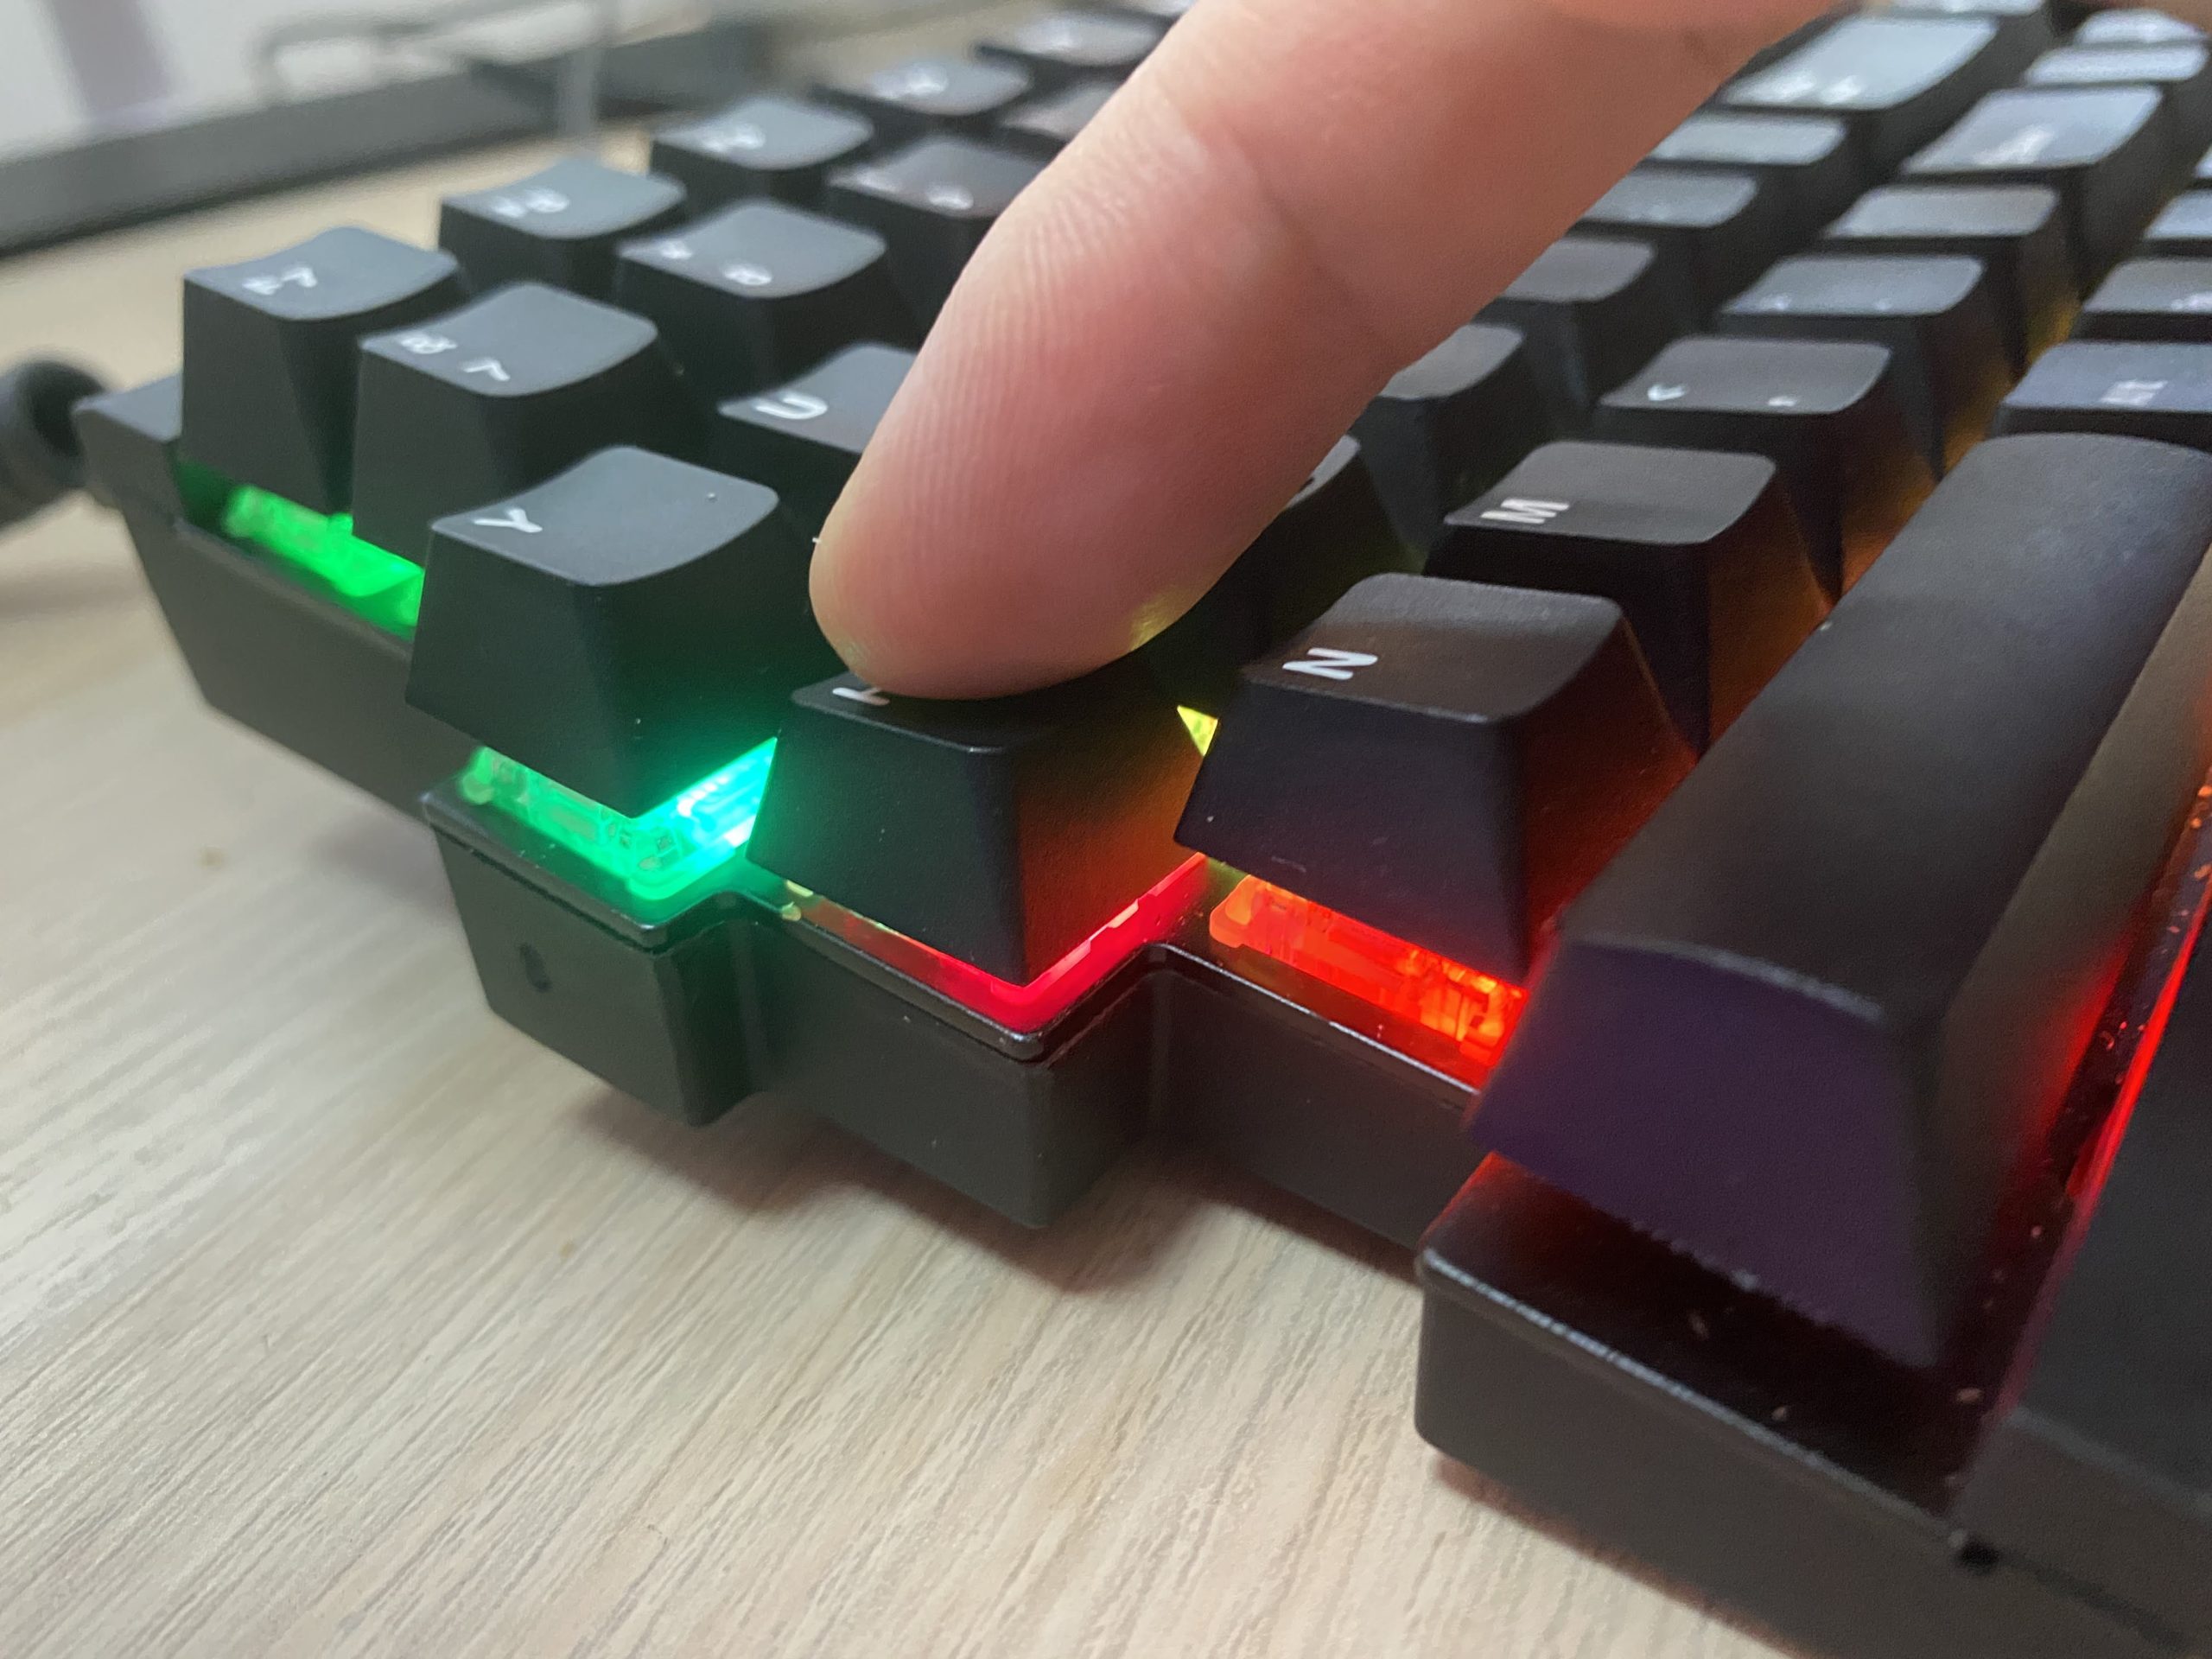 左右に分割できるキーボード Mistel BAROCCO MD770 RGB 静音赤軸レビュー。 | EX-IT 効率化で独立を楽しく